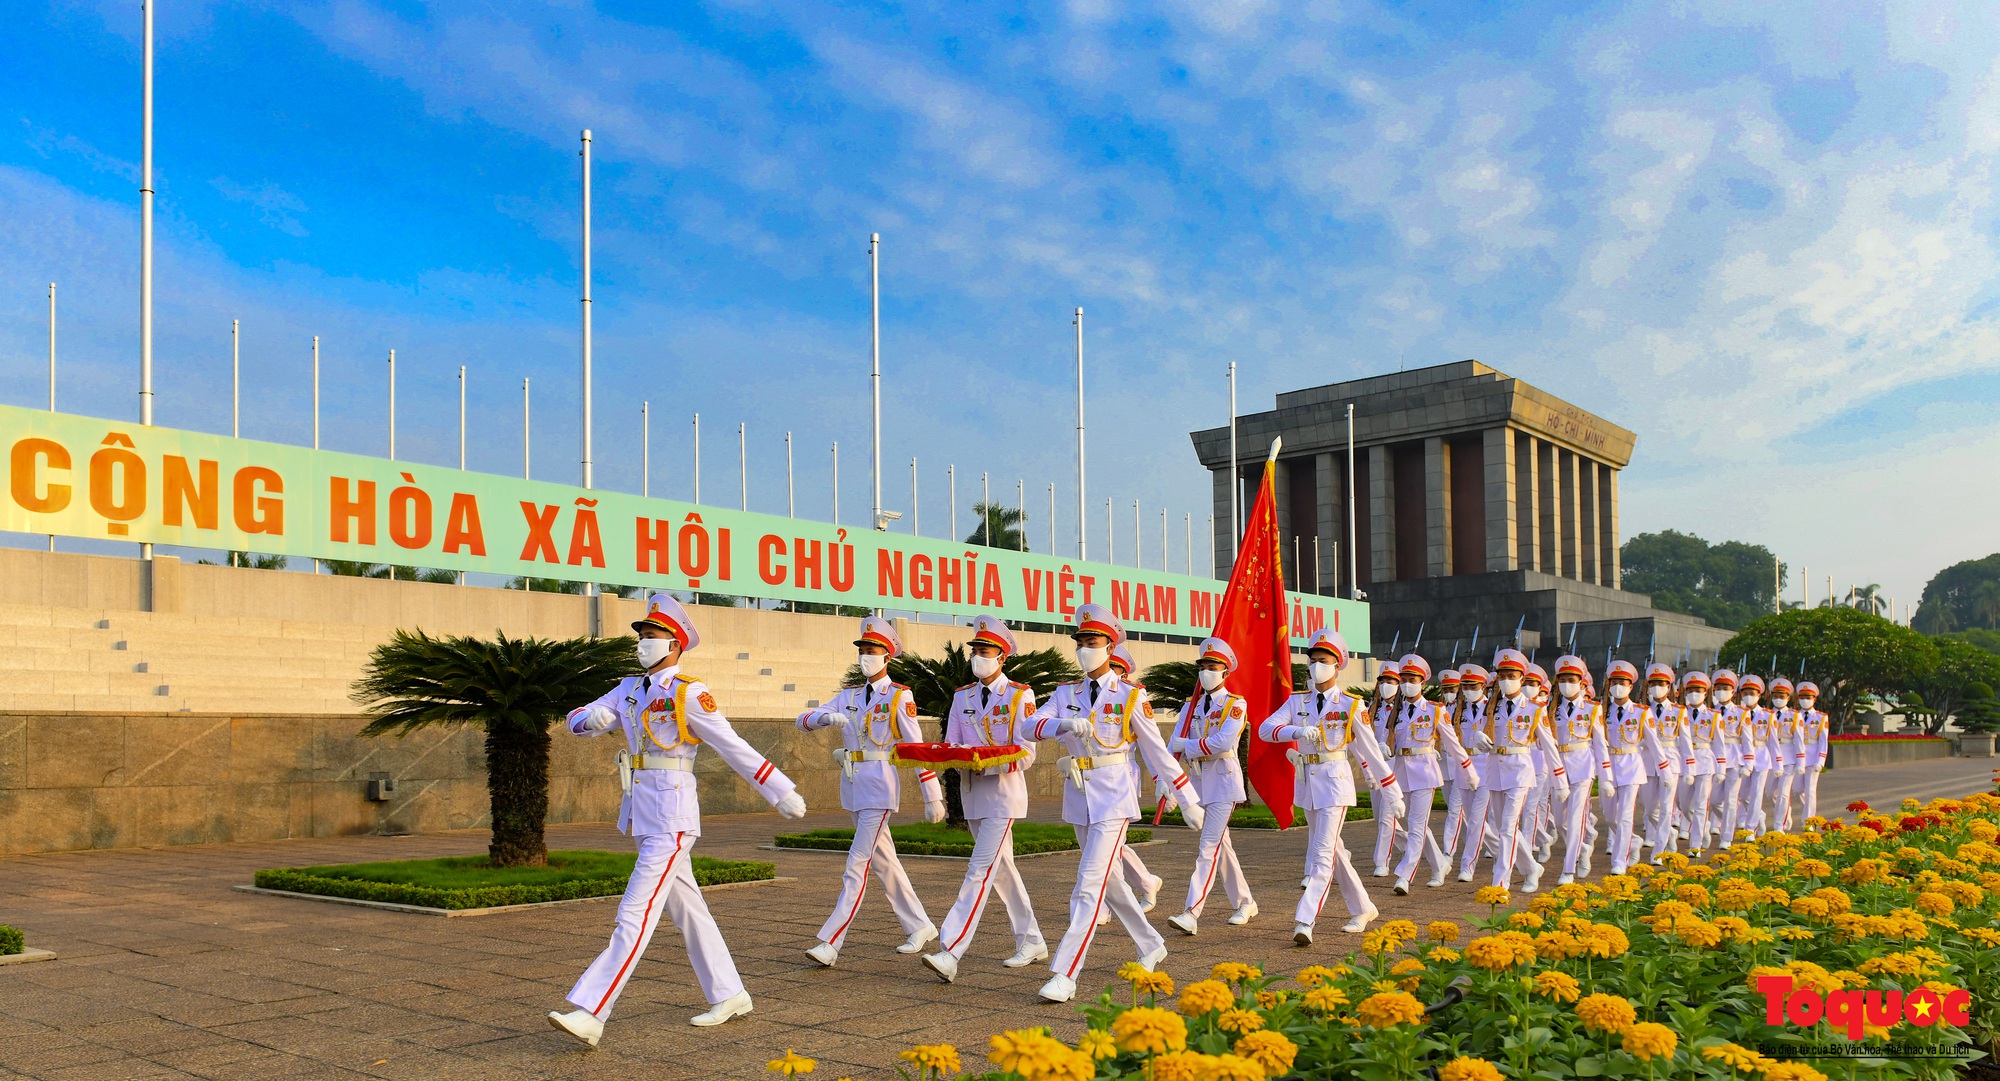 Thiêng liêng nghi Lễ thượng cờ tại Quảng Trường Ba Đình những ngày tháng 9 lịch sử - Ảnh 18.